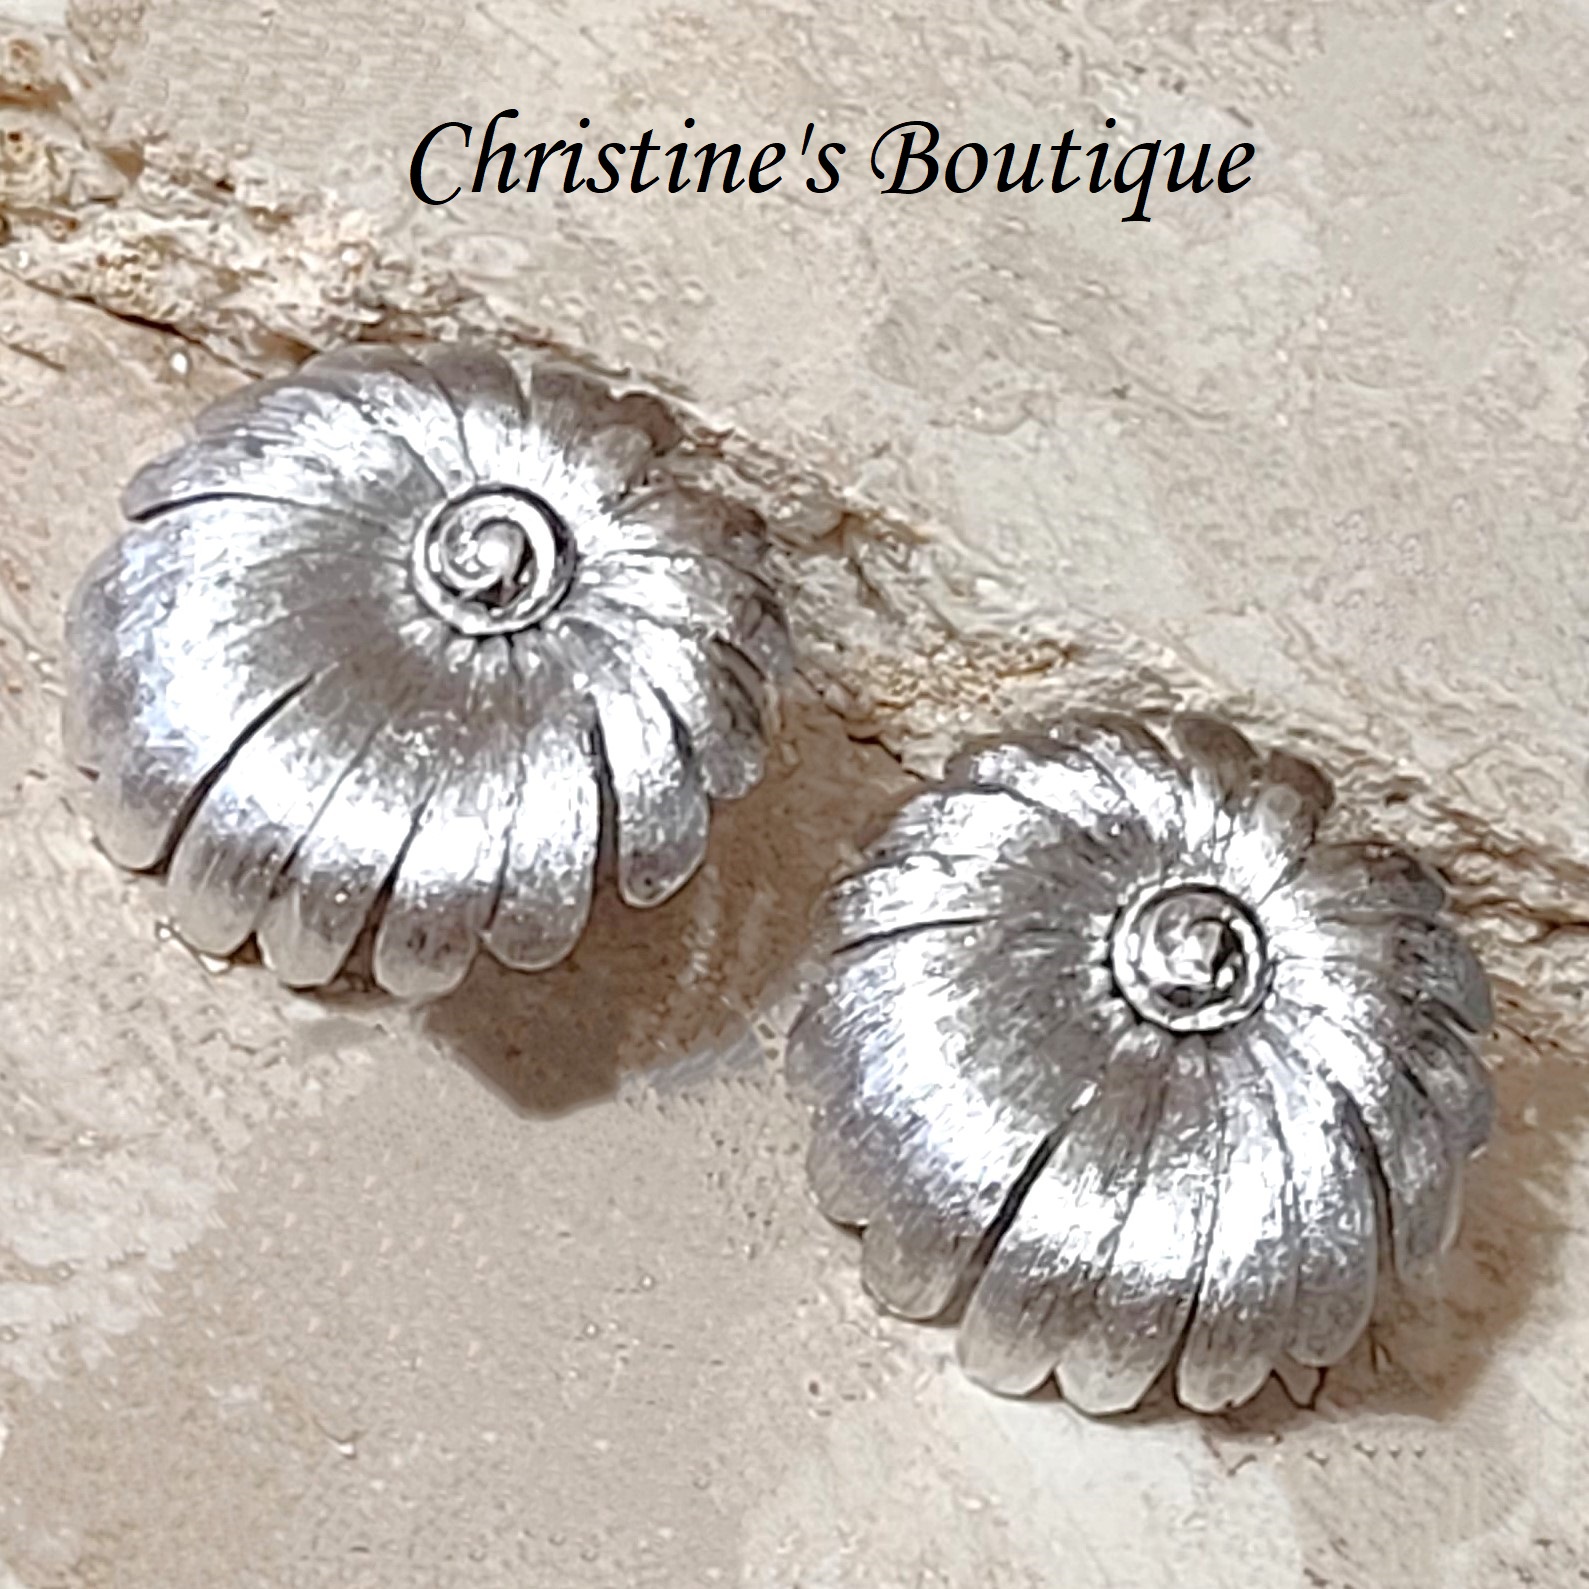 Monet clipon earrings, silvertone flowers, button style vintage earrings